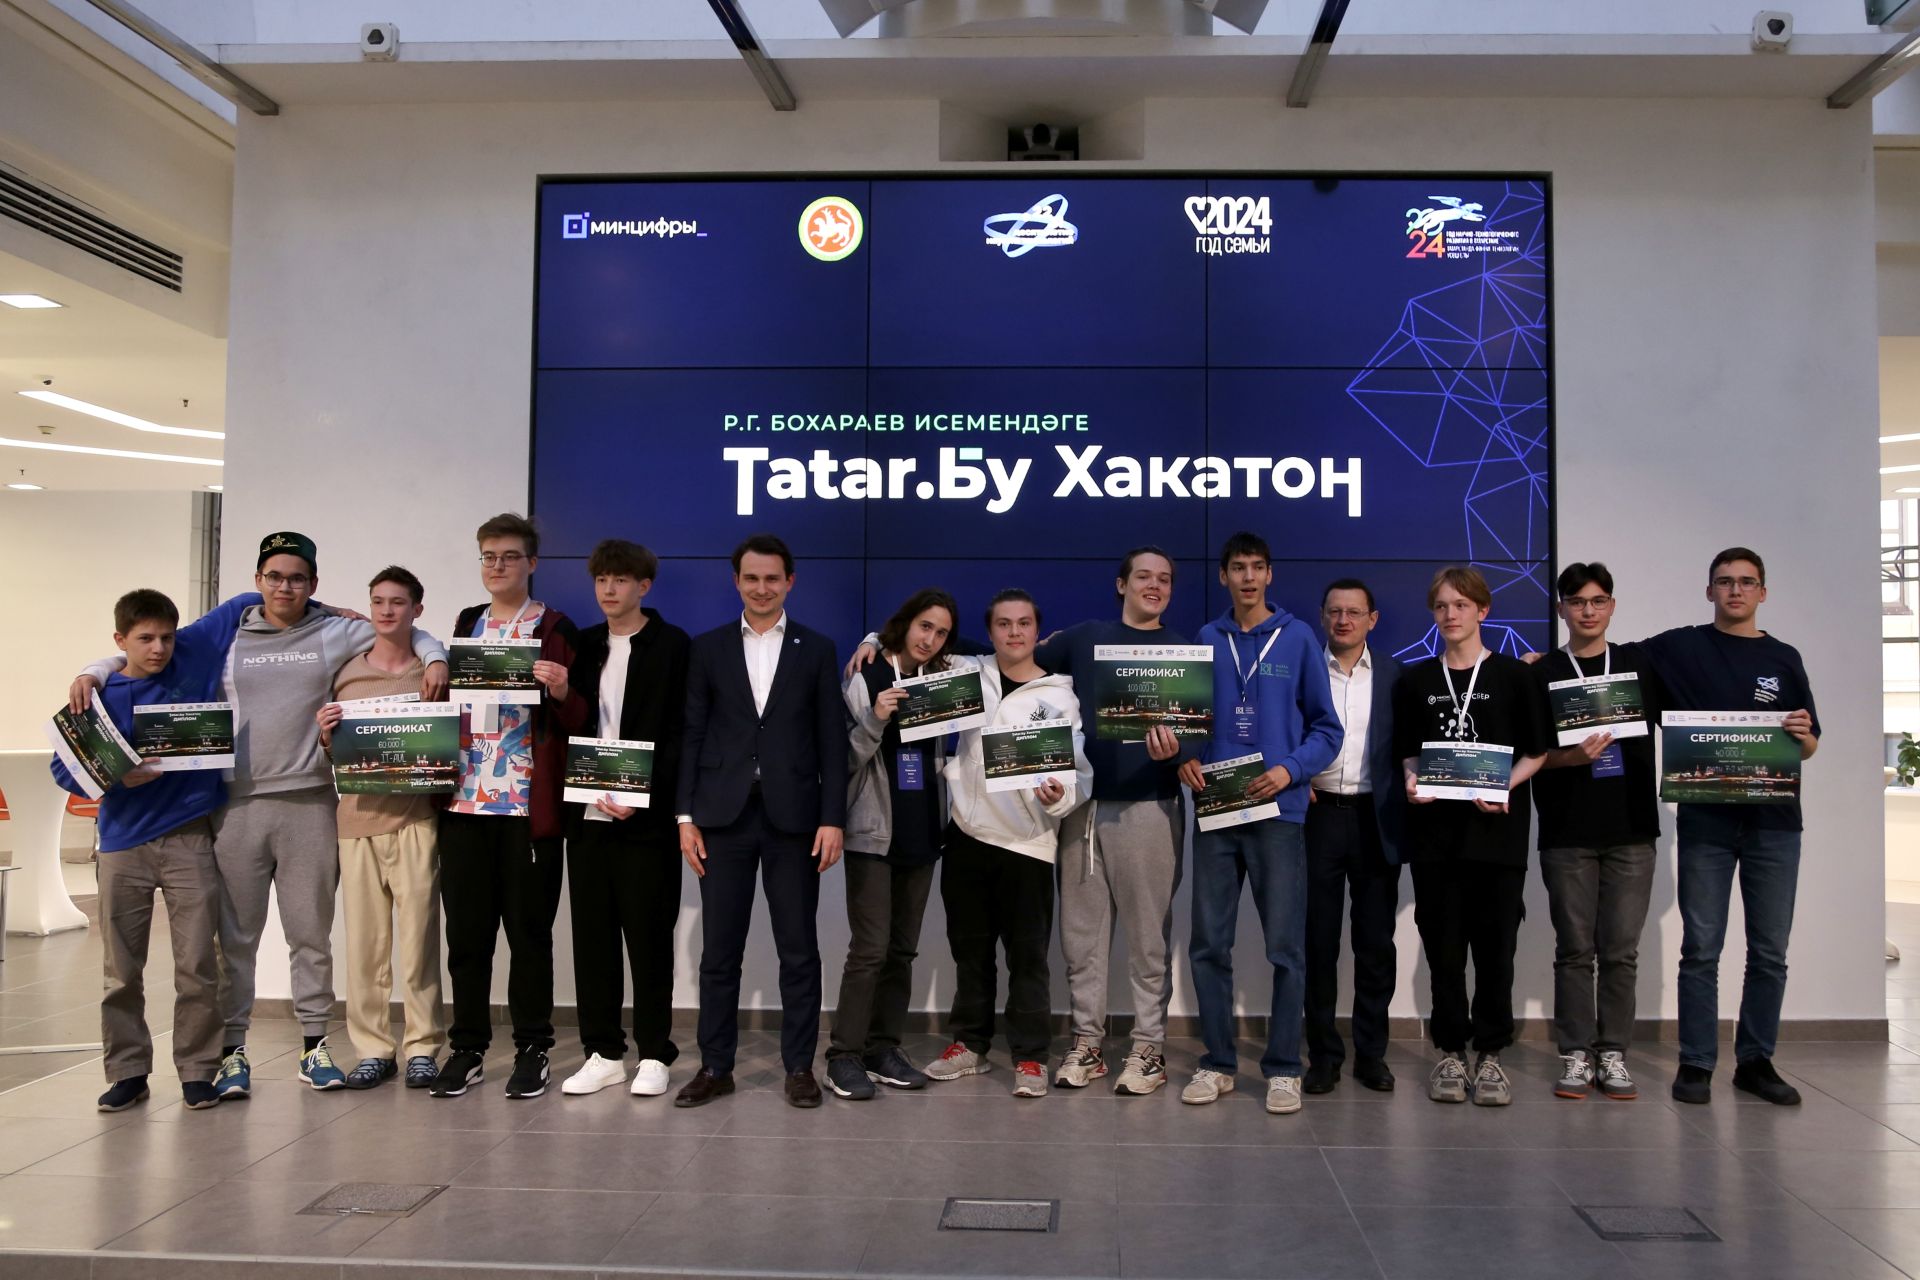 «Tatar.Бу Хакатон им. Р.Г. Бухараева»: молодые айтишники предложили инновационные IT-решения для популяризации татарского языка